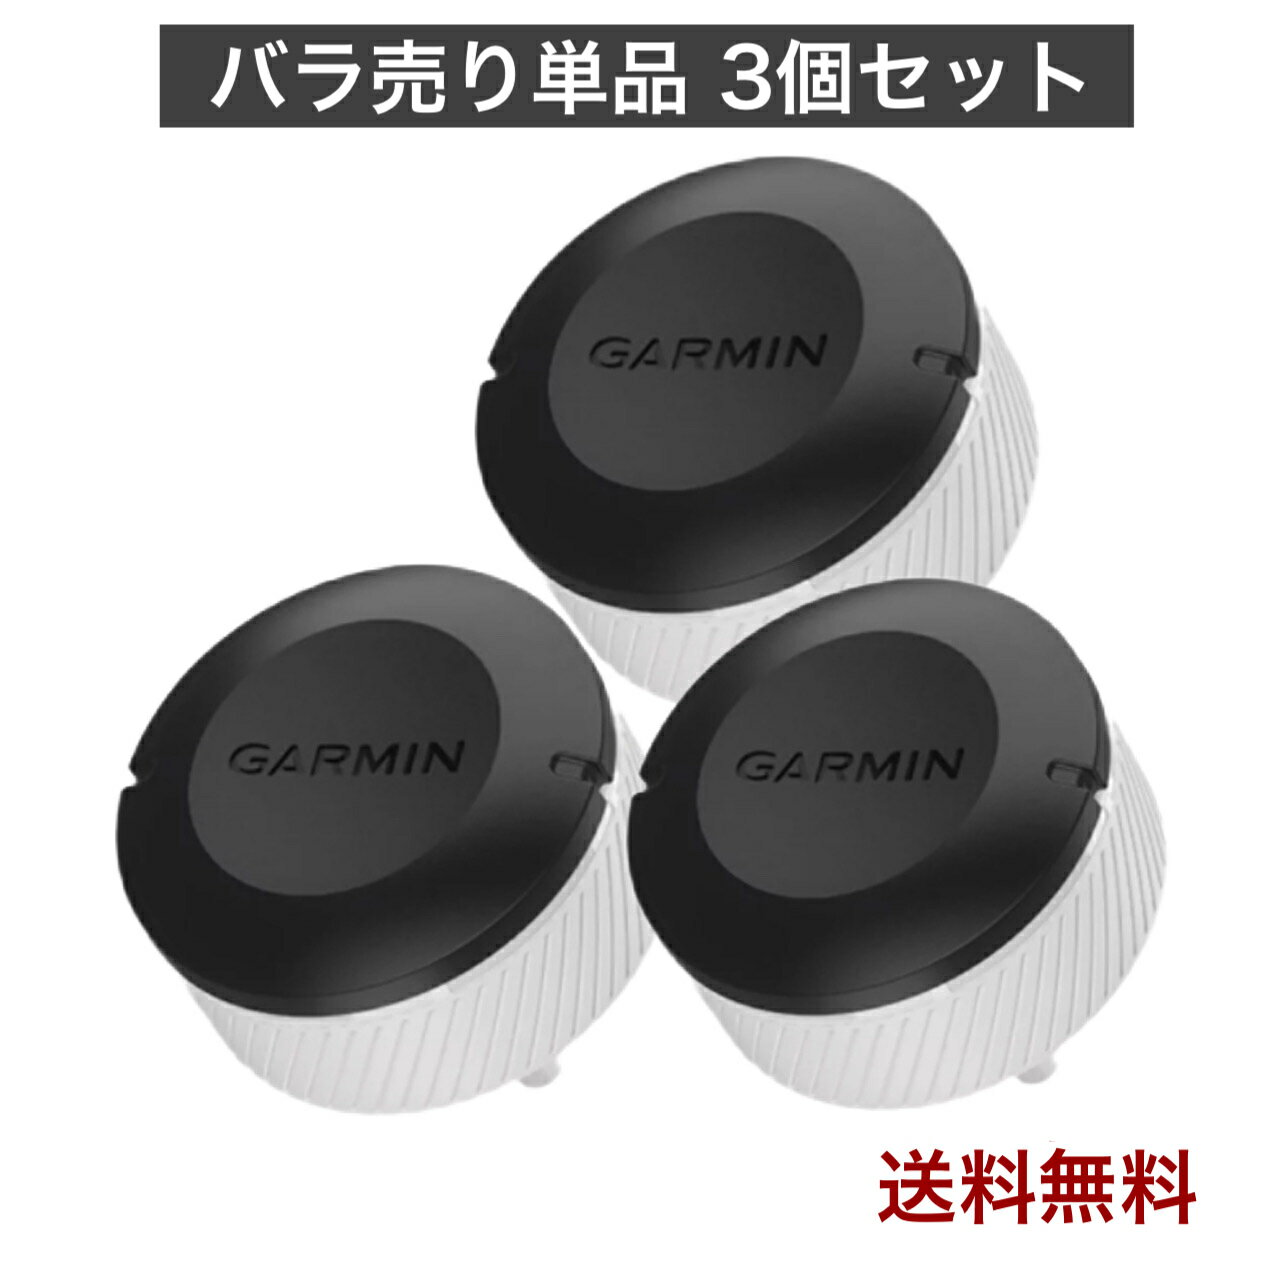 Perfect Shield ガーミン GARMIN zumo 396 (3枚セット) 日本製 自社製造直販